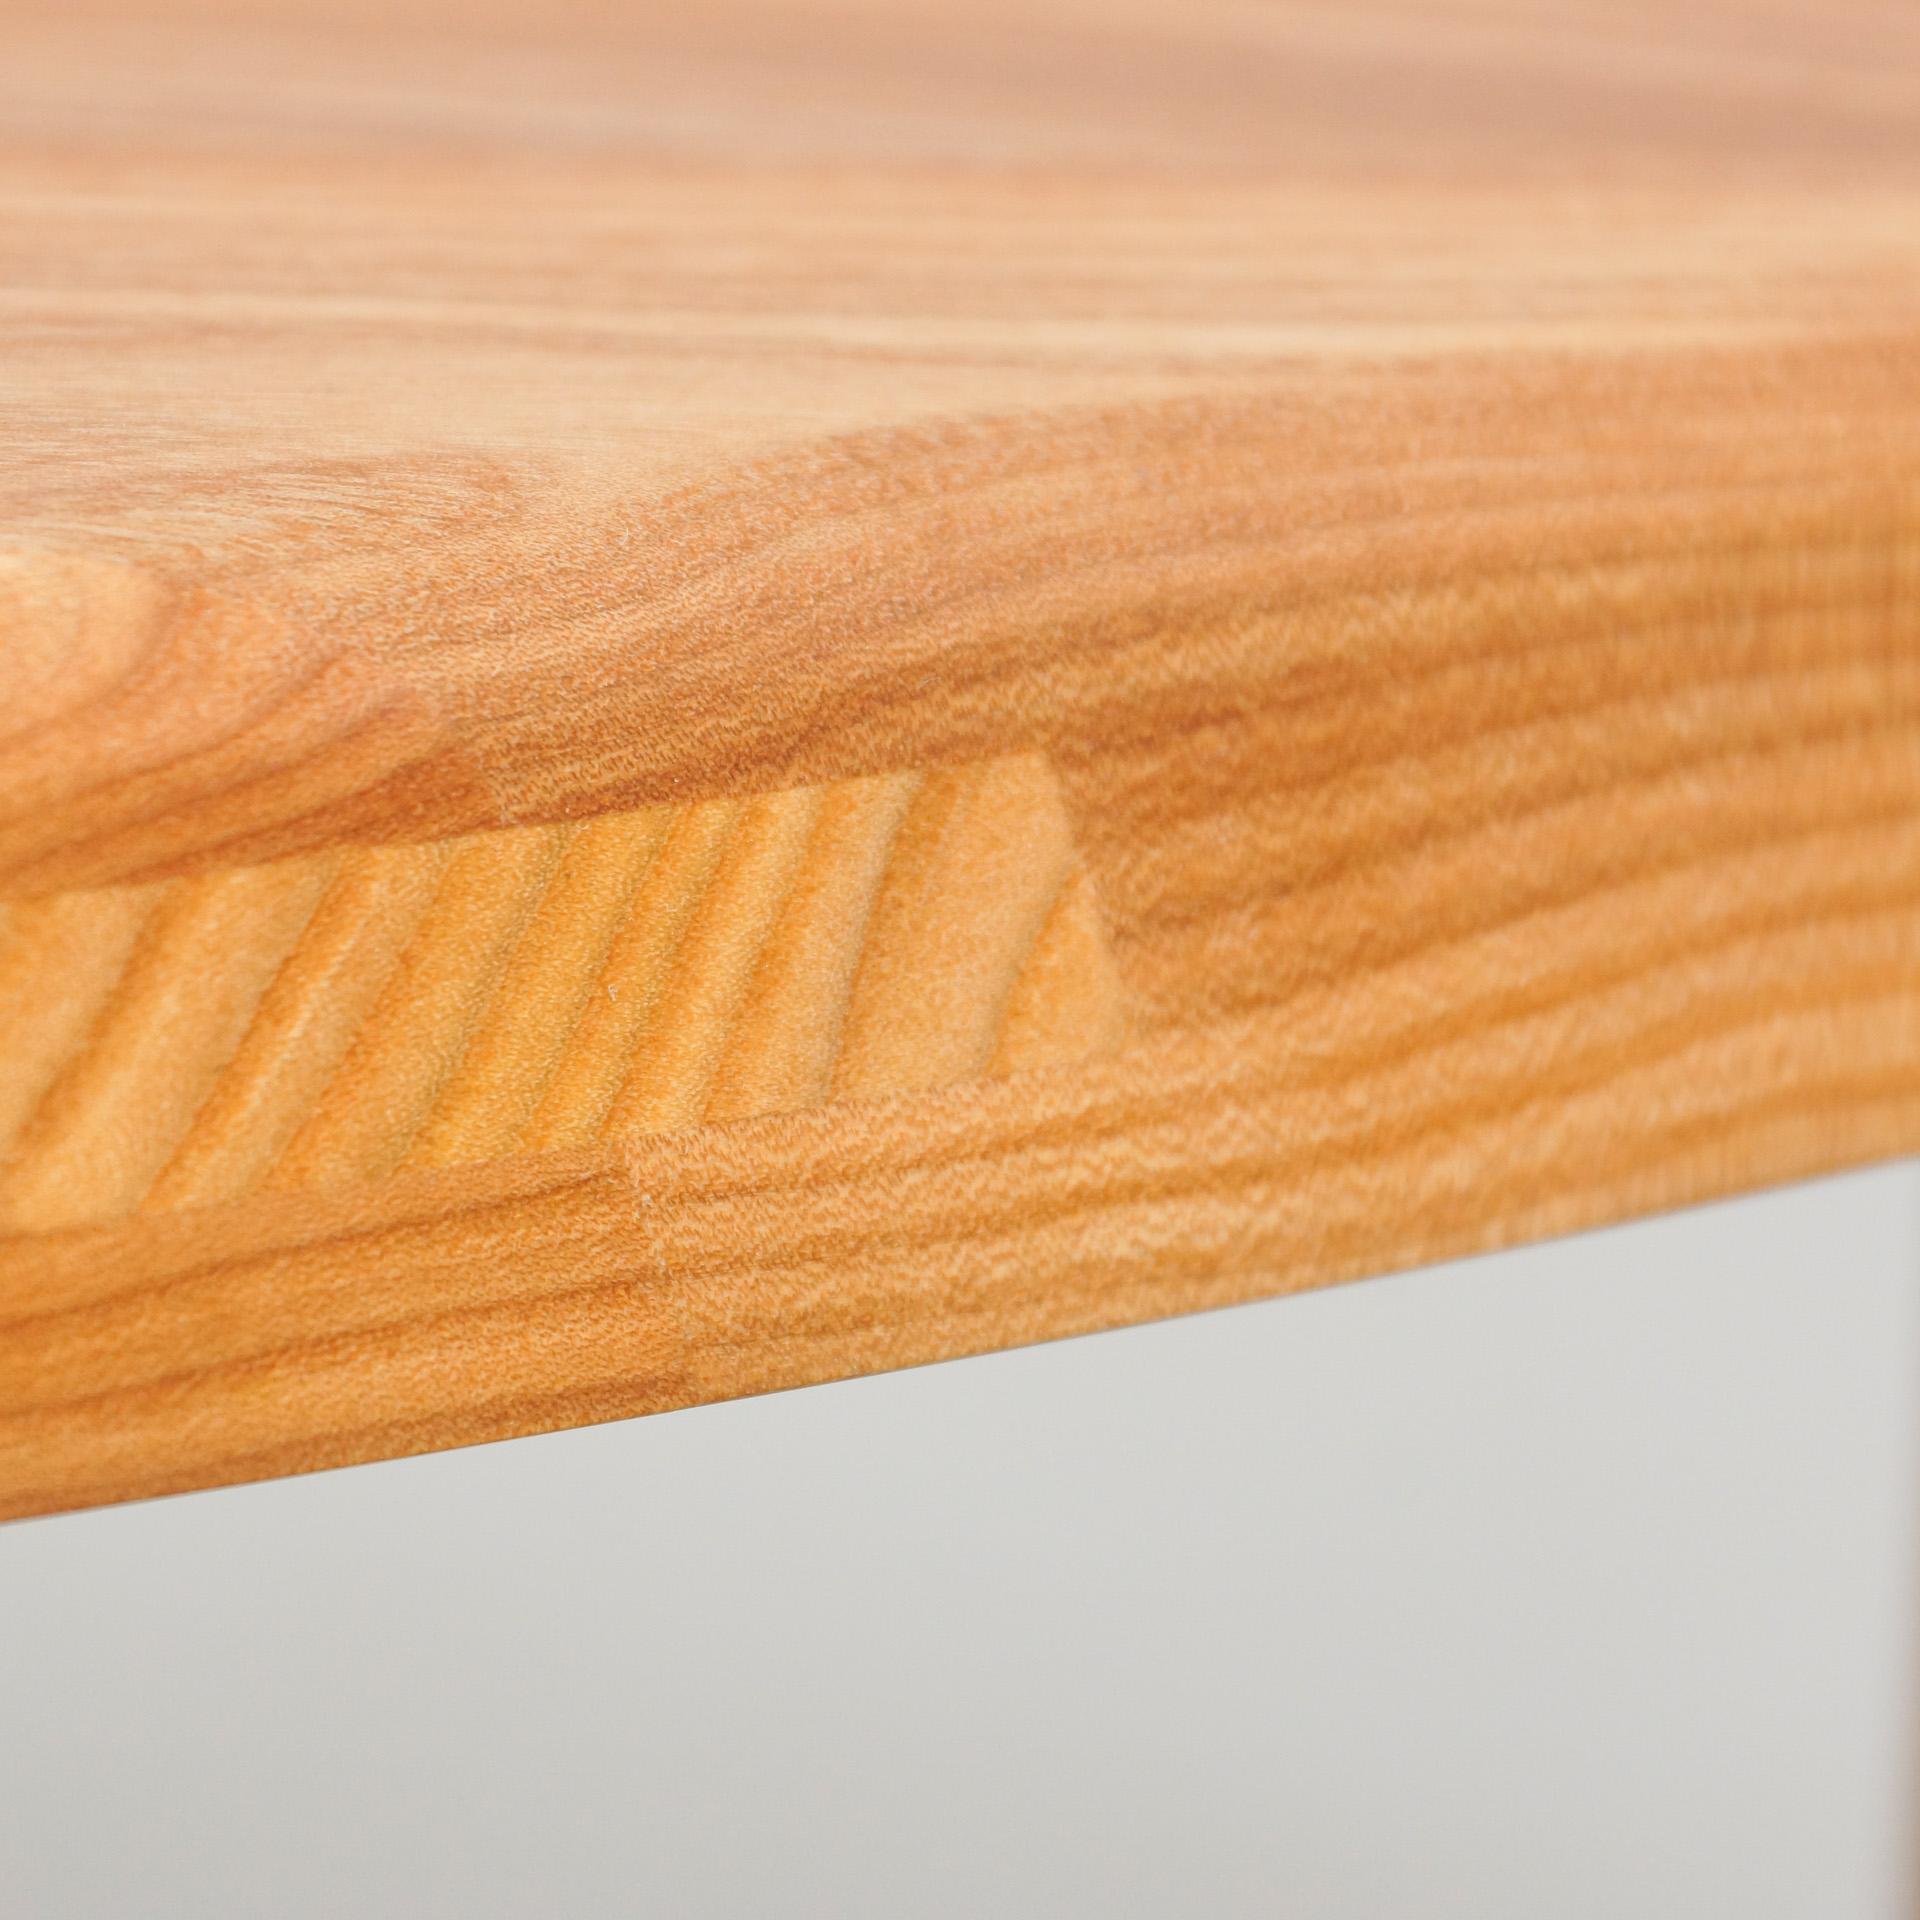 Pierre Chapo T23 Solid Elm Wood Formalist Side Table 1